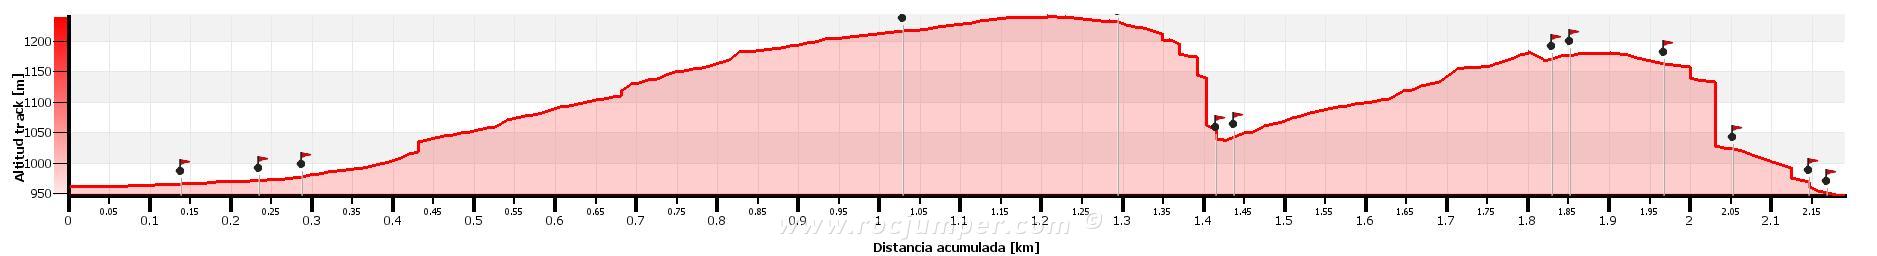 Altimetría - Barranco Fenollet Oeste + Barranco Fenollet Este - RocJumper